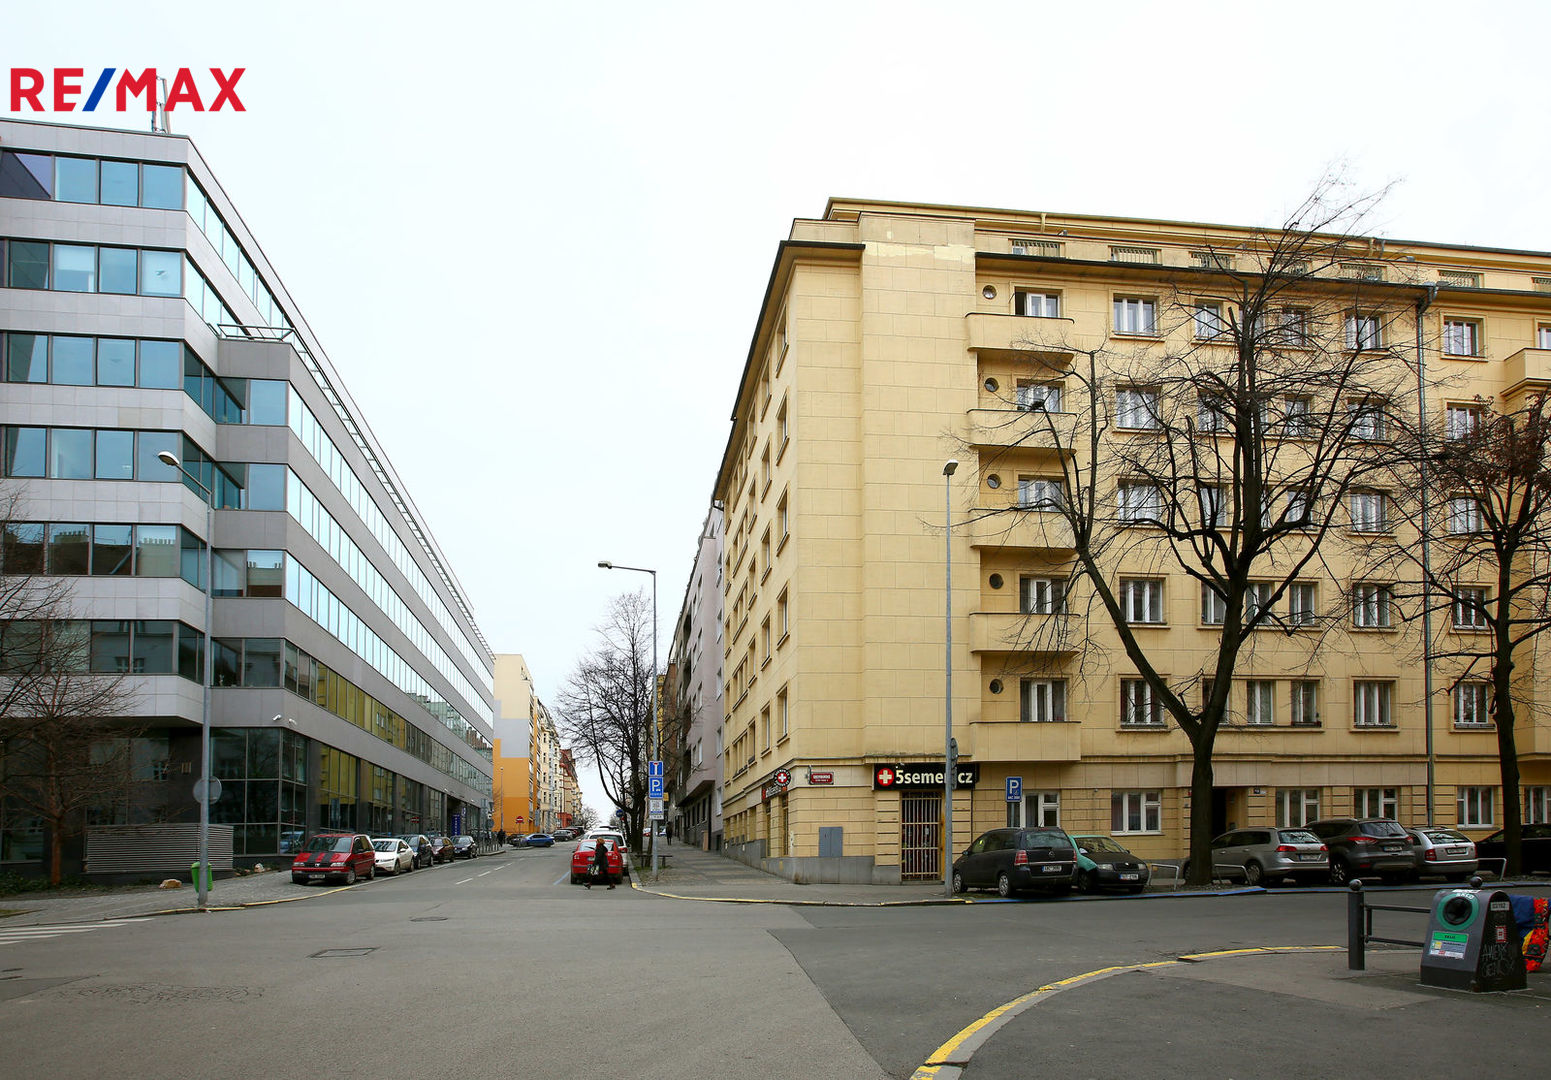 Pronájem bytu 3+1 v osobním vlastnictví, 76 m2, Praha 3 - Žižkov